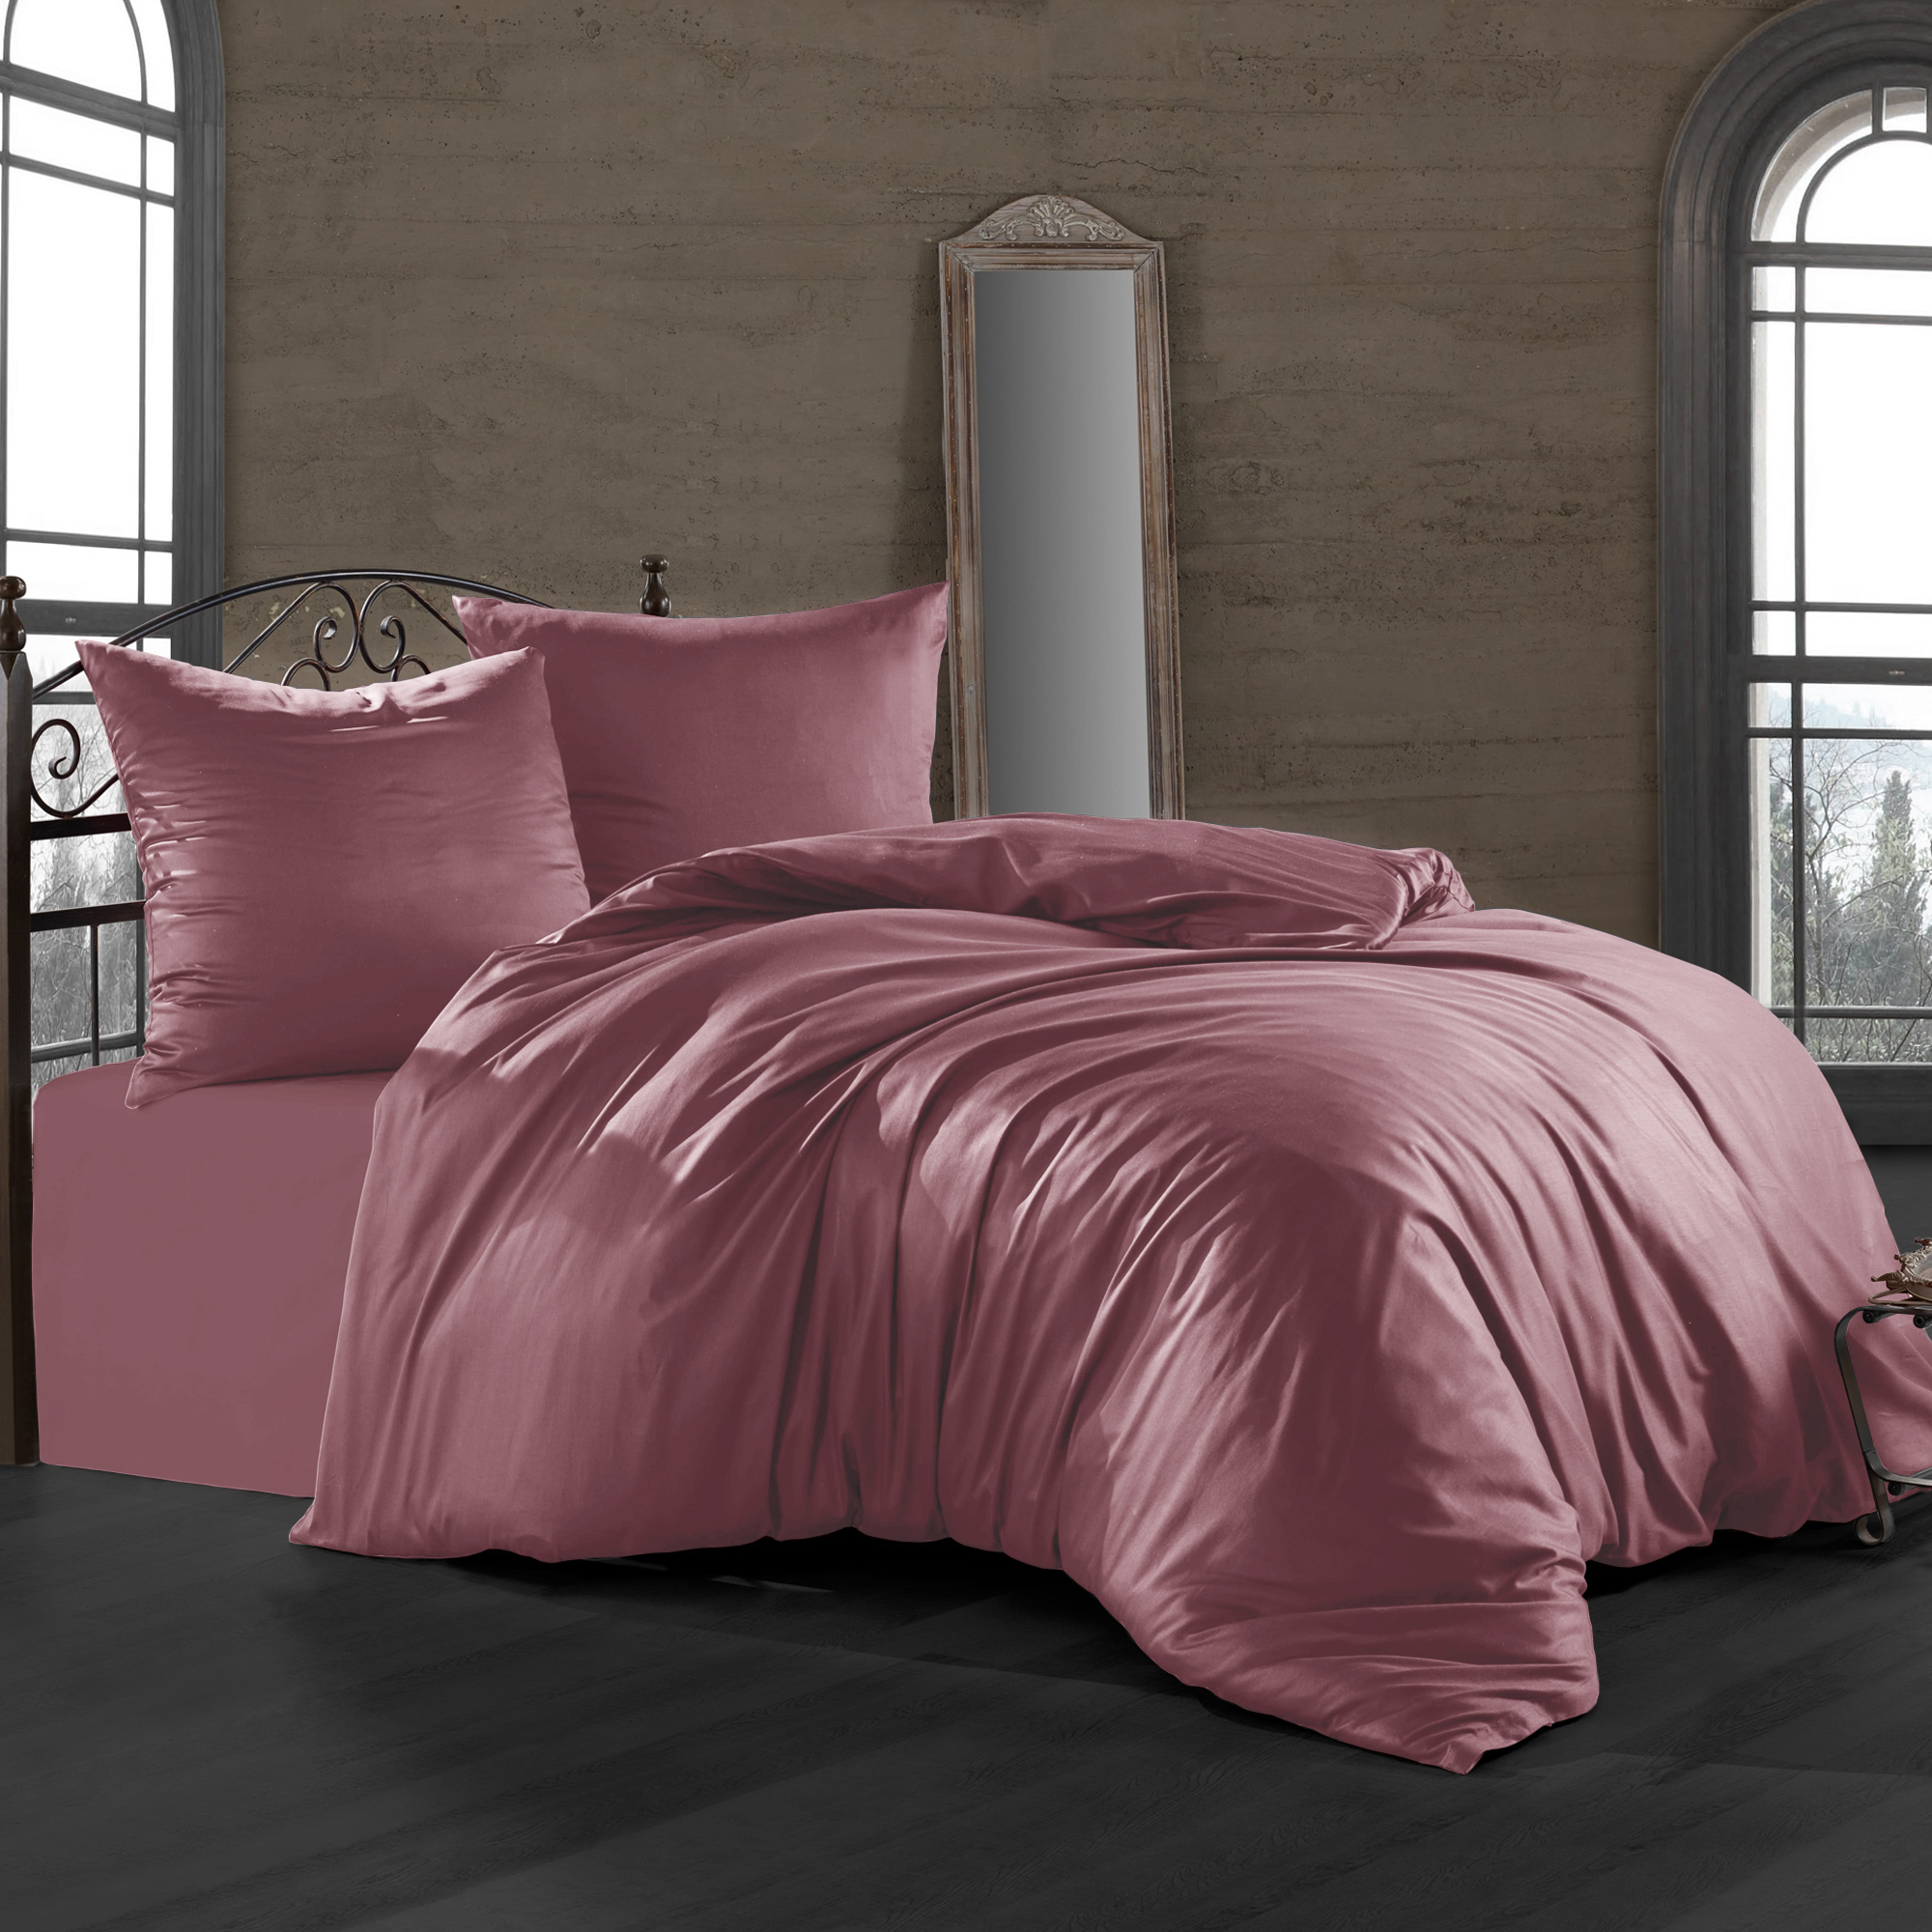 Комплект постельного белья Bahar пепельно-розовый Семейный/дуэт комплект постельного белья bahar синий полуторный